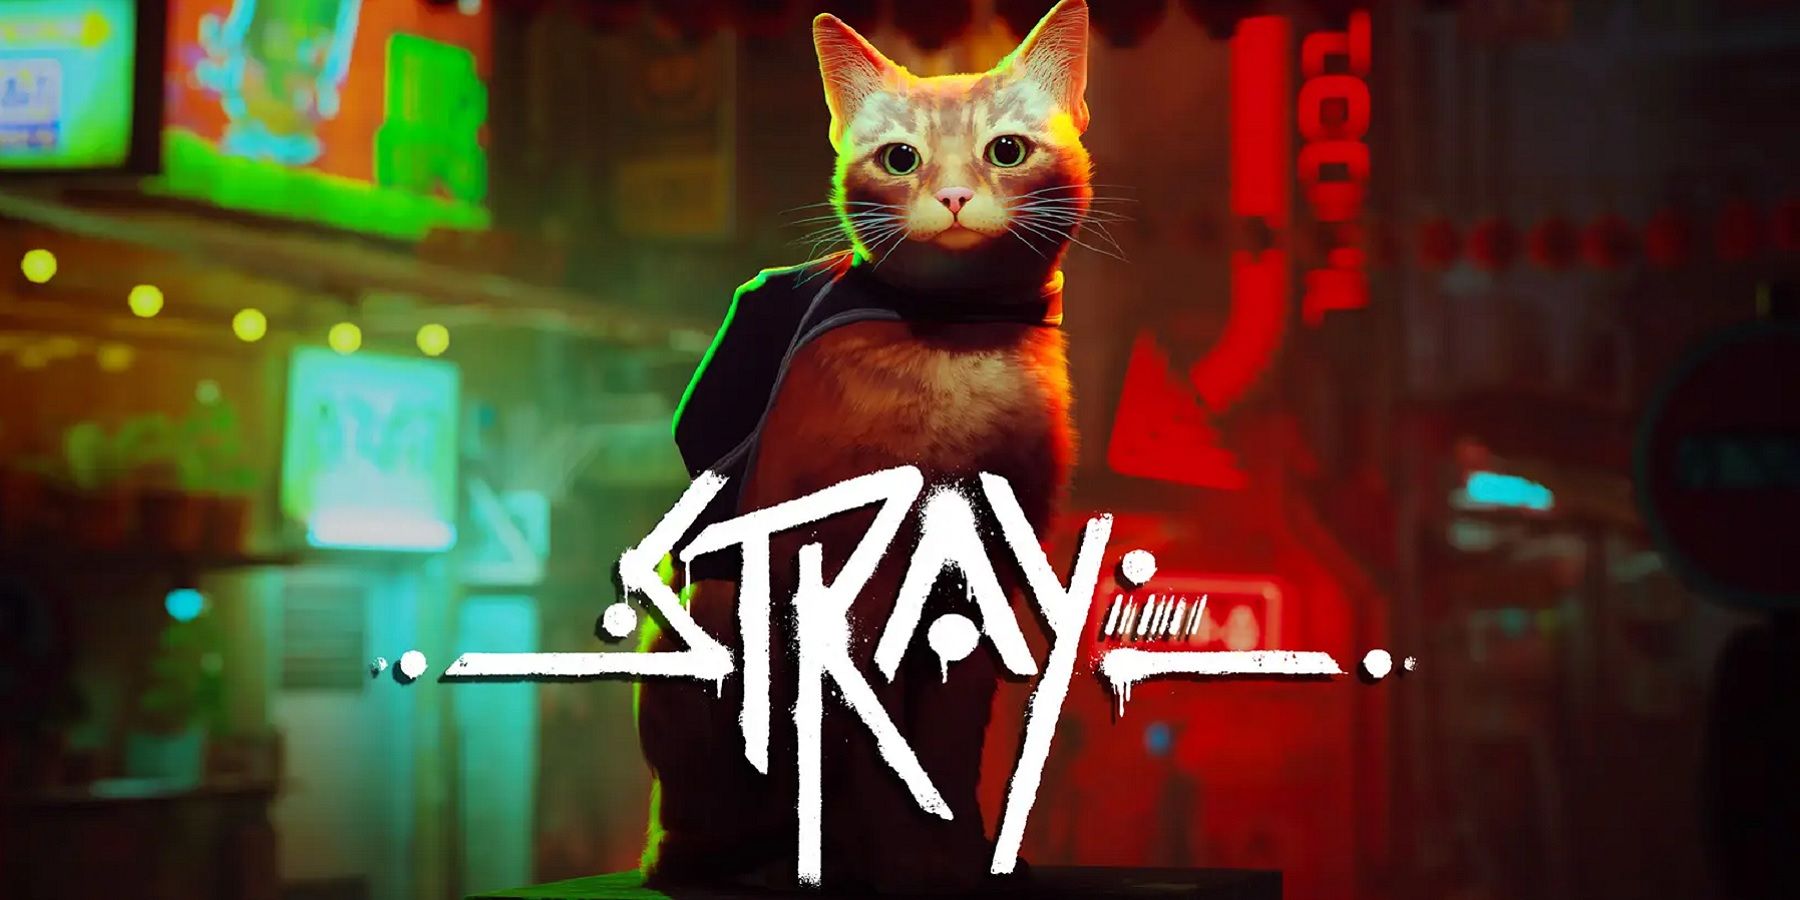 stray cat and logo